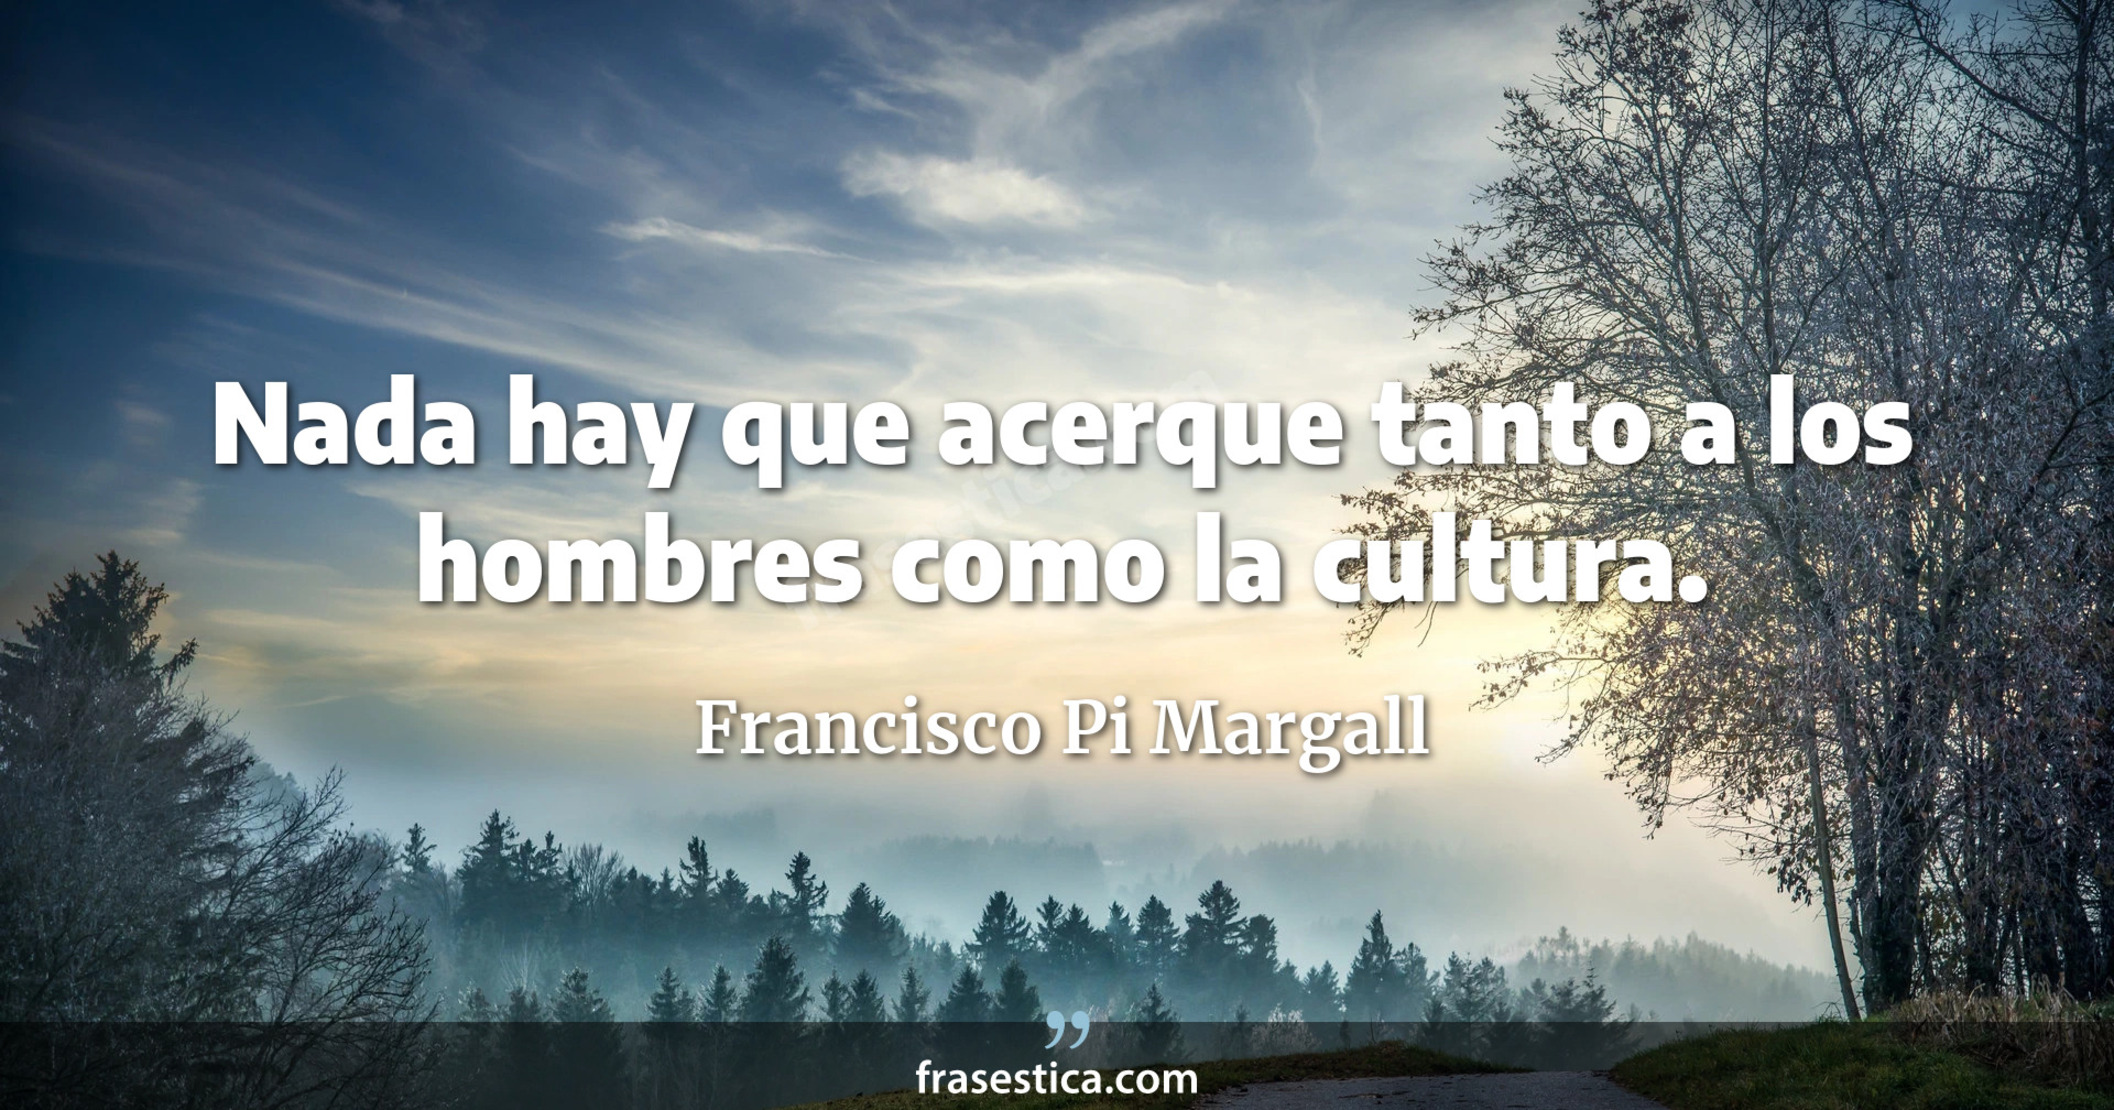 Nada hay que acerque tanto a los hombres como la cultura. - Francisco Pi Margall